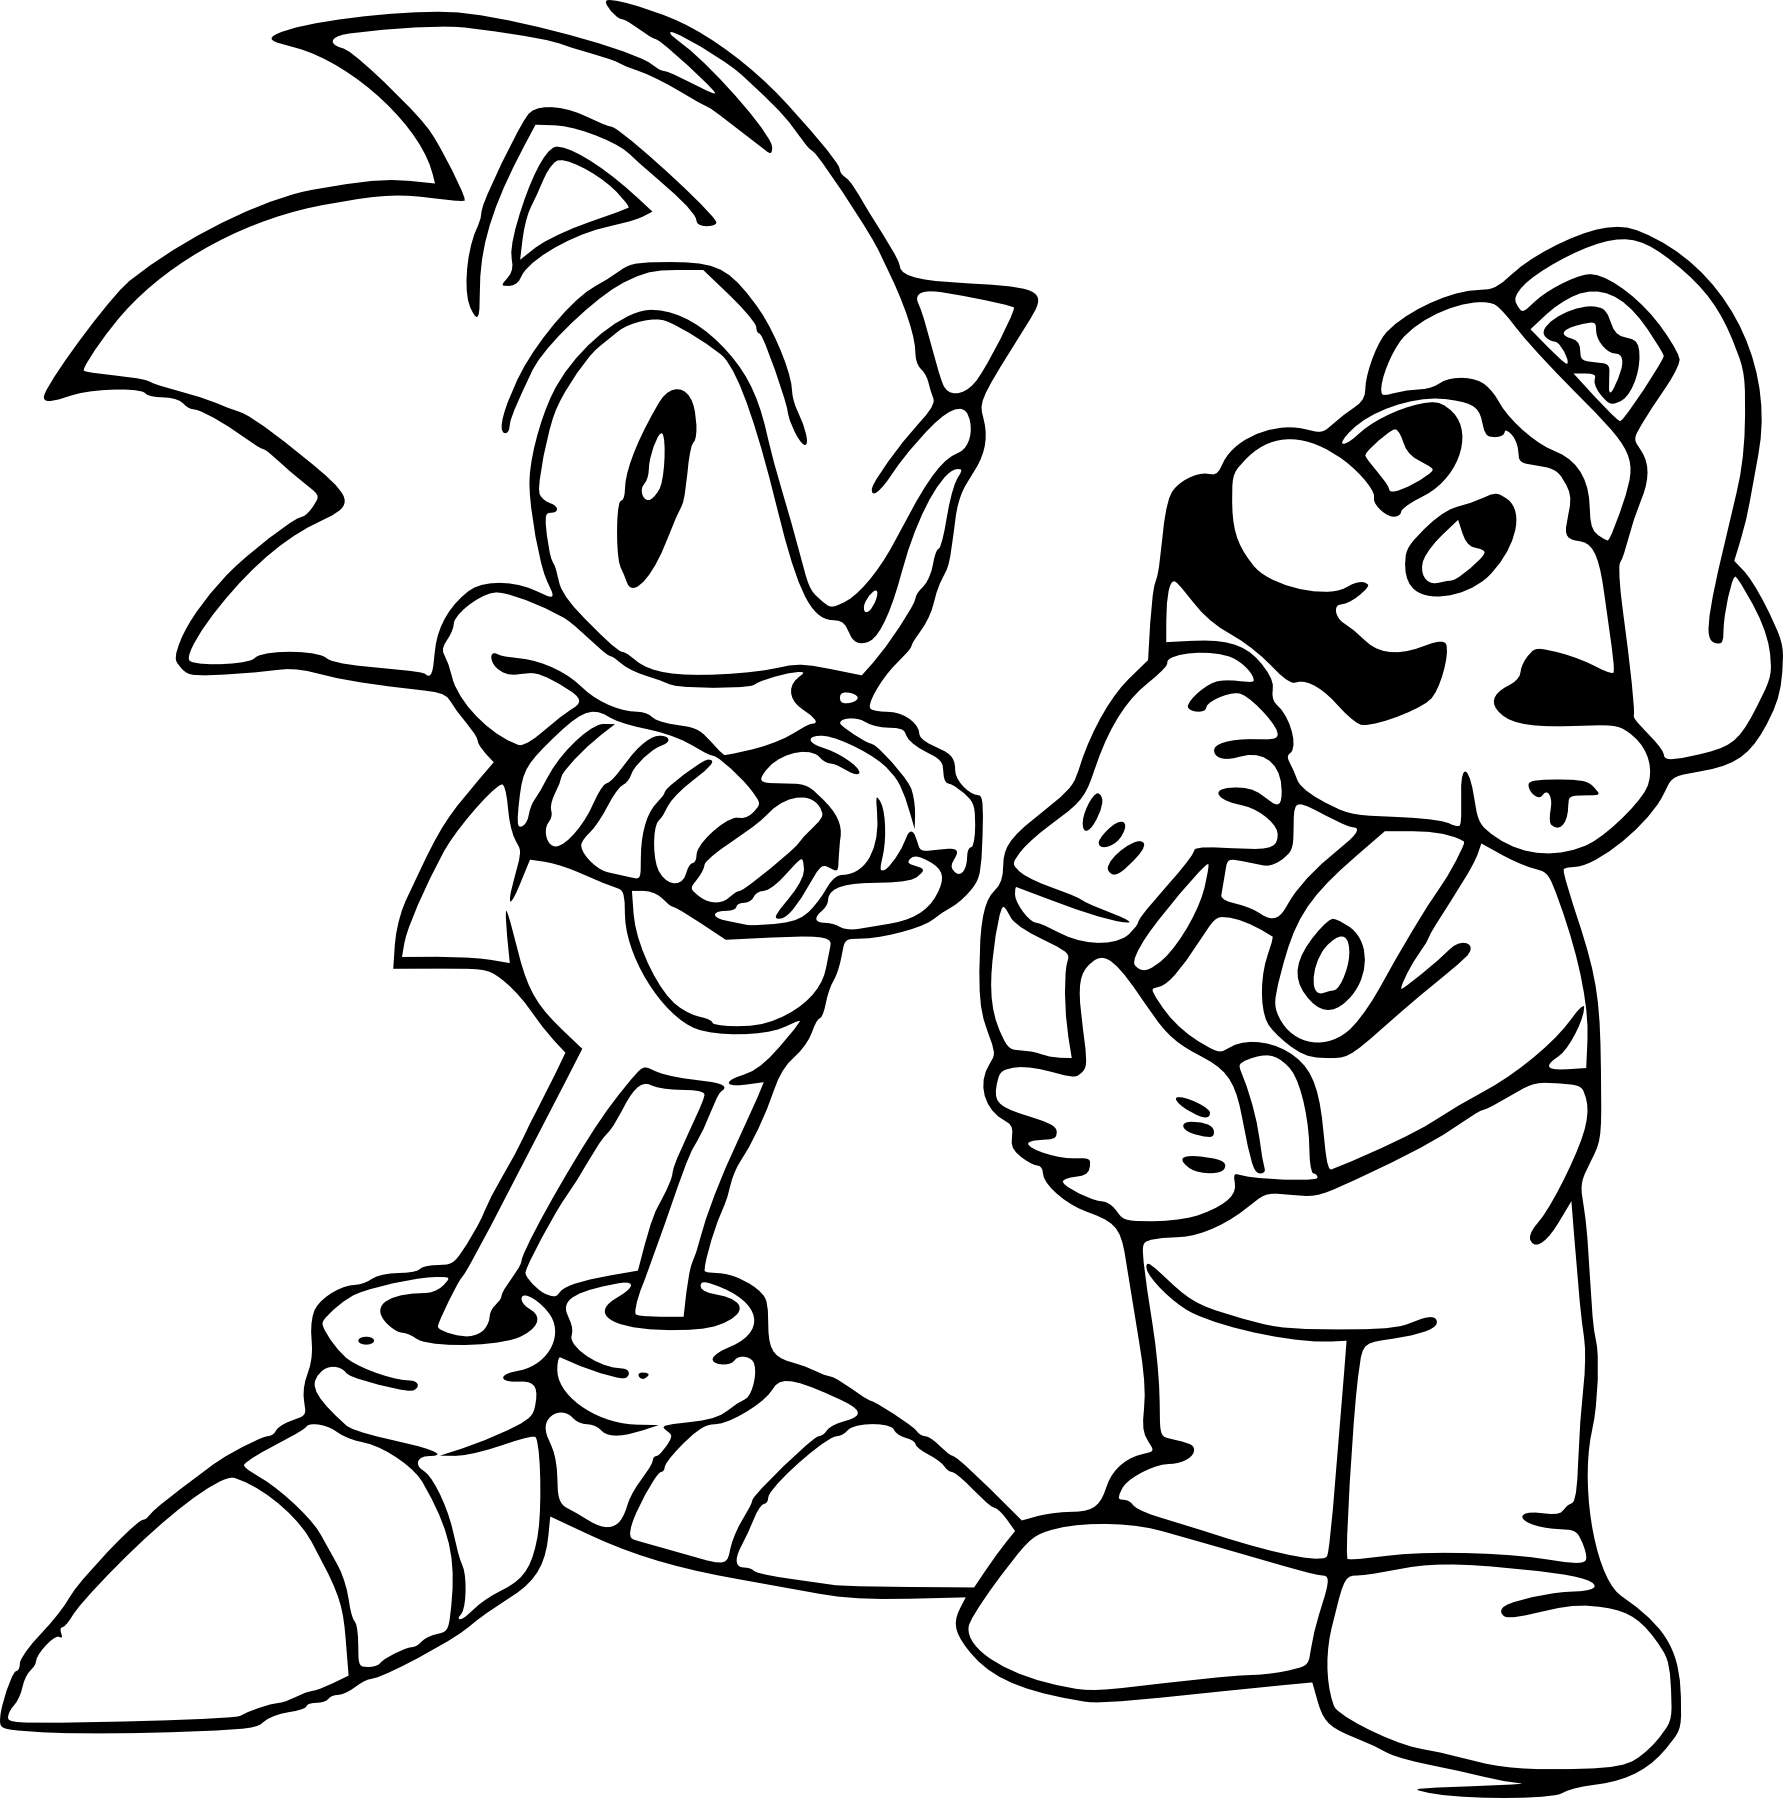 Coloriage Mario et Sonic à imprimer